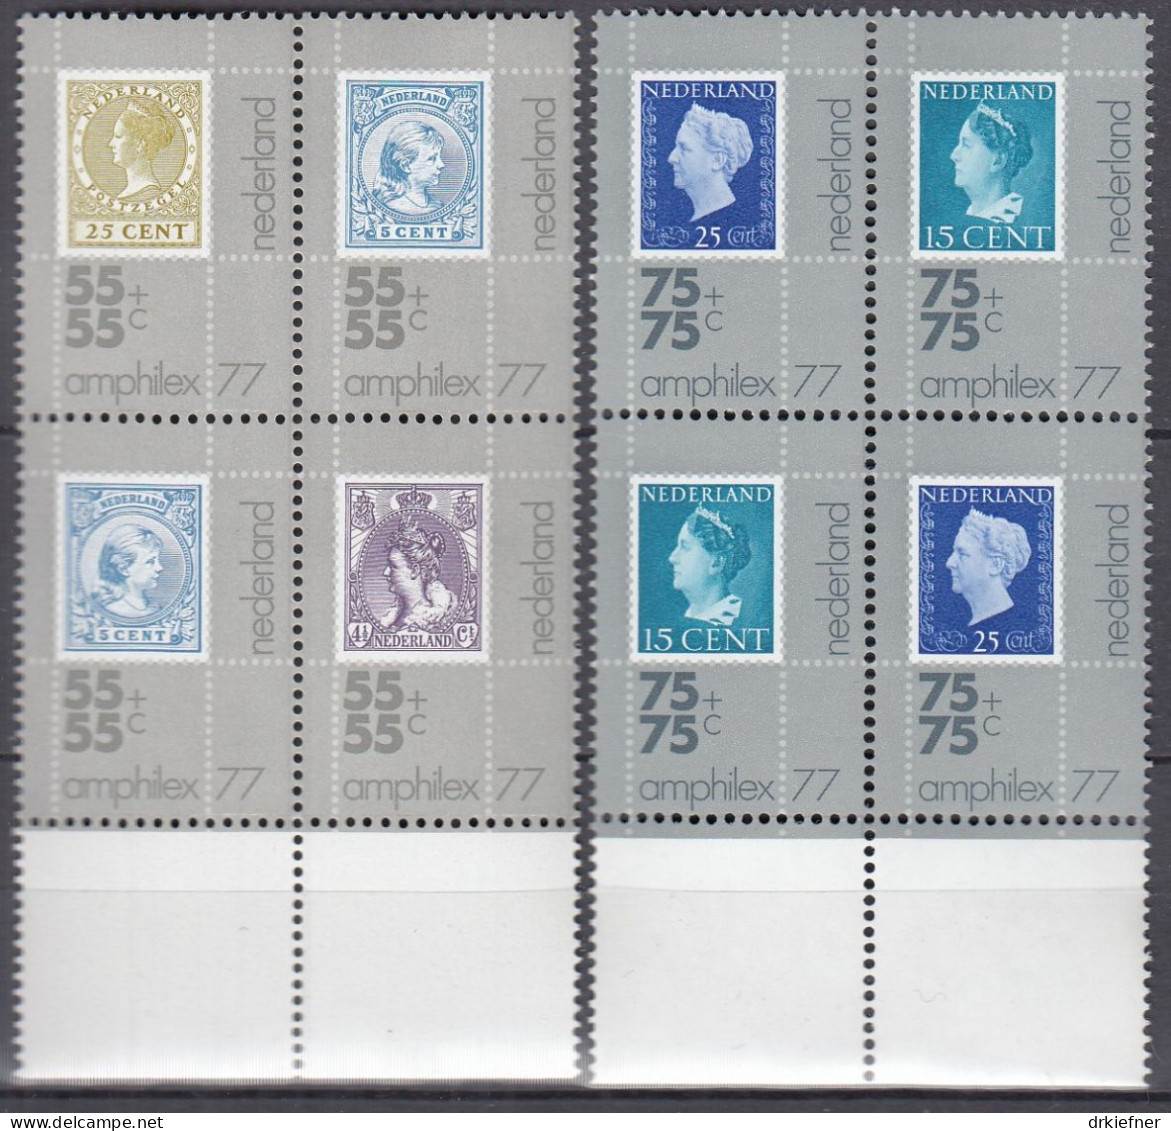 NIEDERLANDE  1083-1087, 4erBlock, Postfrisch **, Internationale Briefmarkenausstellung AMPHILEX ’77, 1976 - Unused Stamps